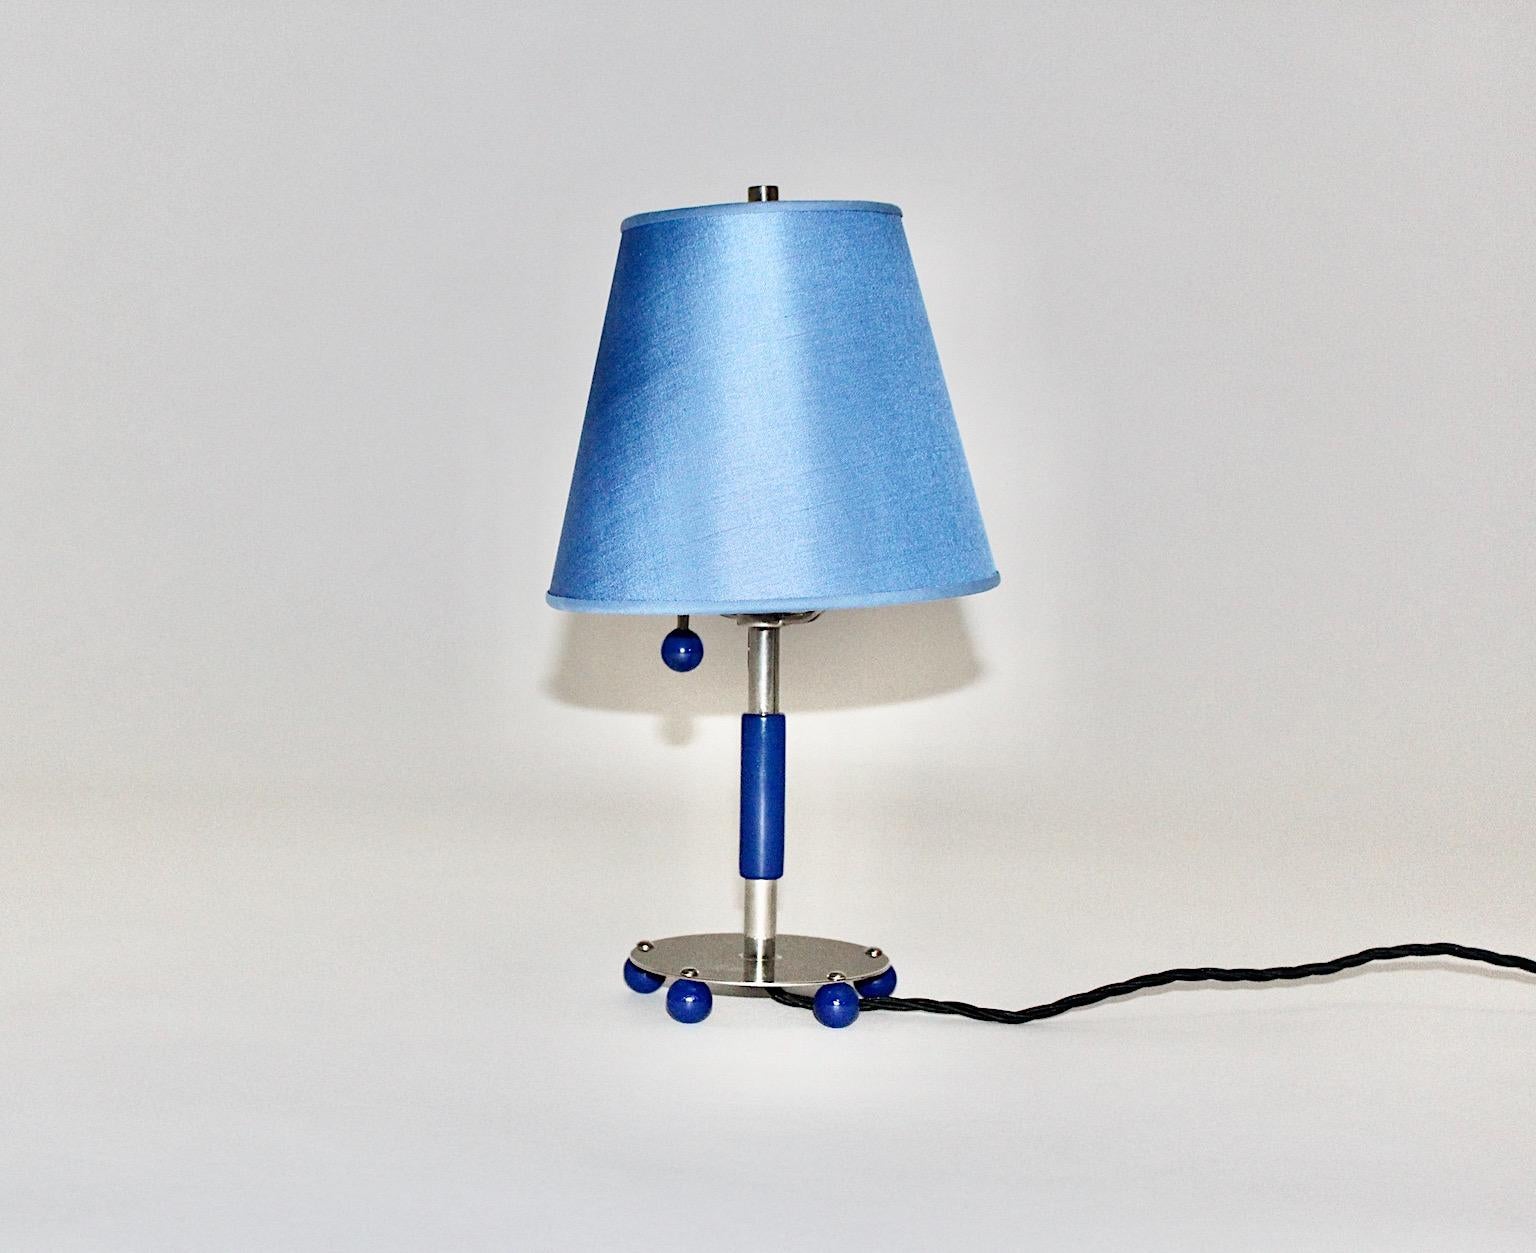 Blue Art Deco Vintage Chromed Metal Adjustable Table Lamp, 1930, Germany For Sale 2